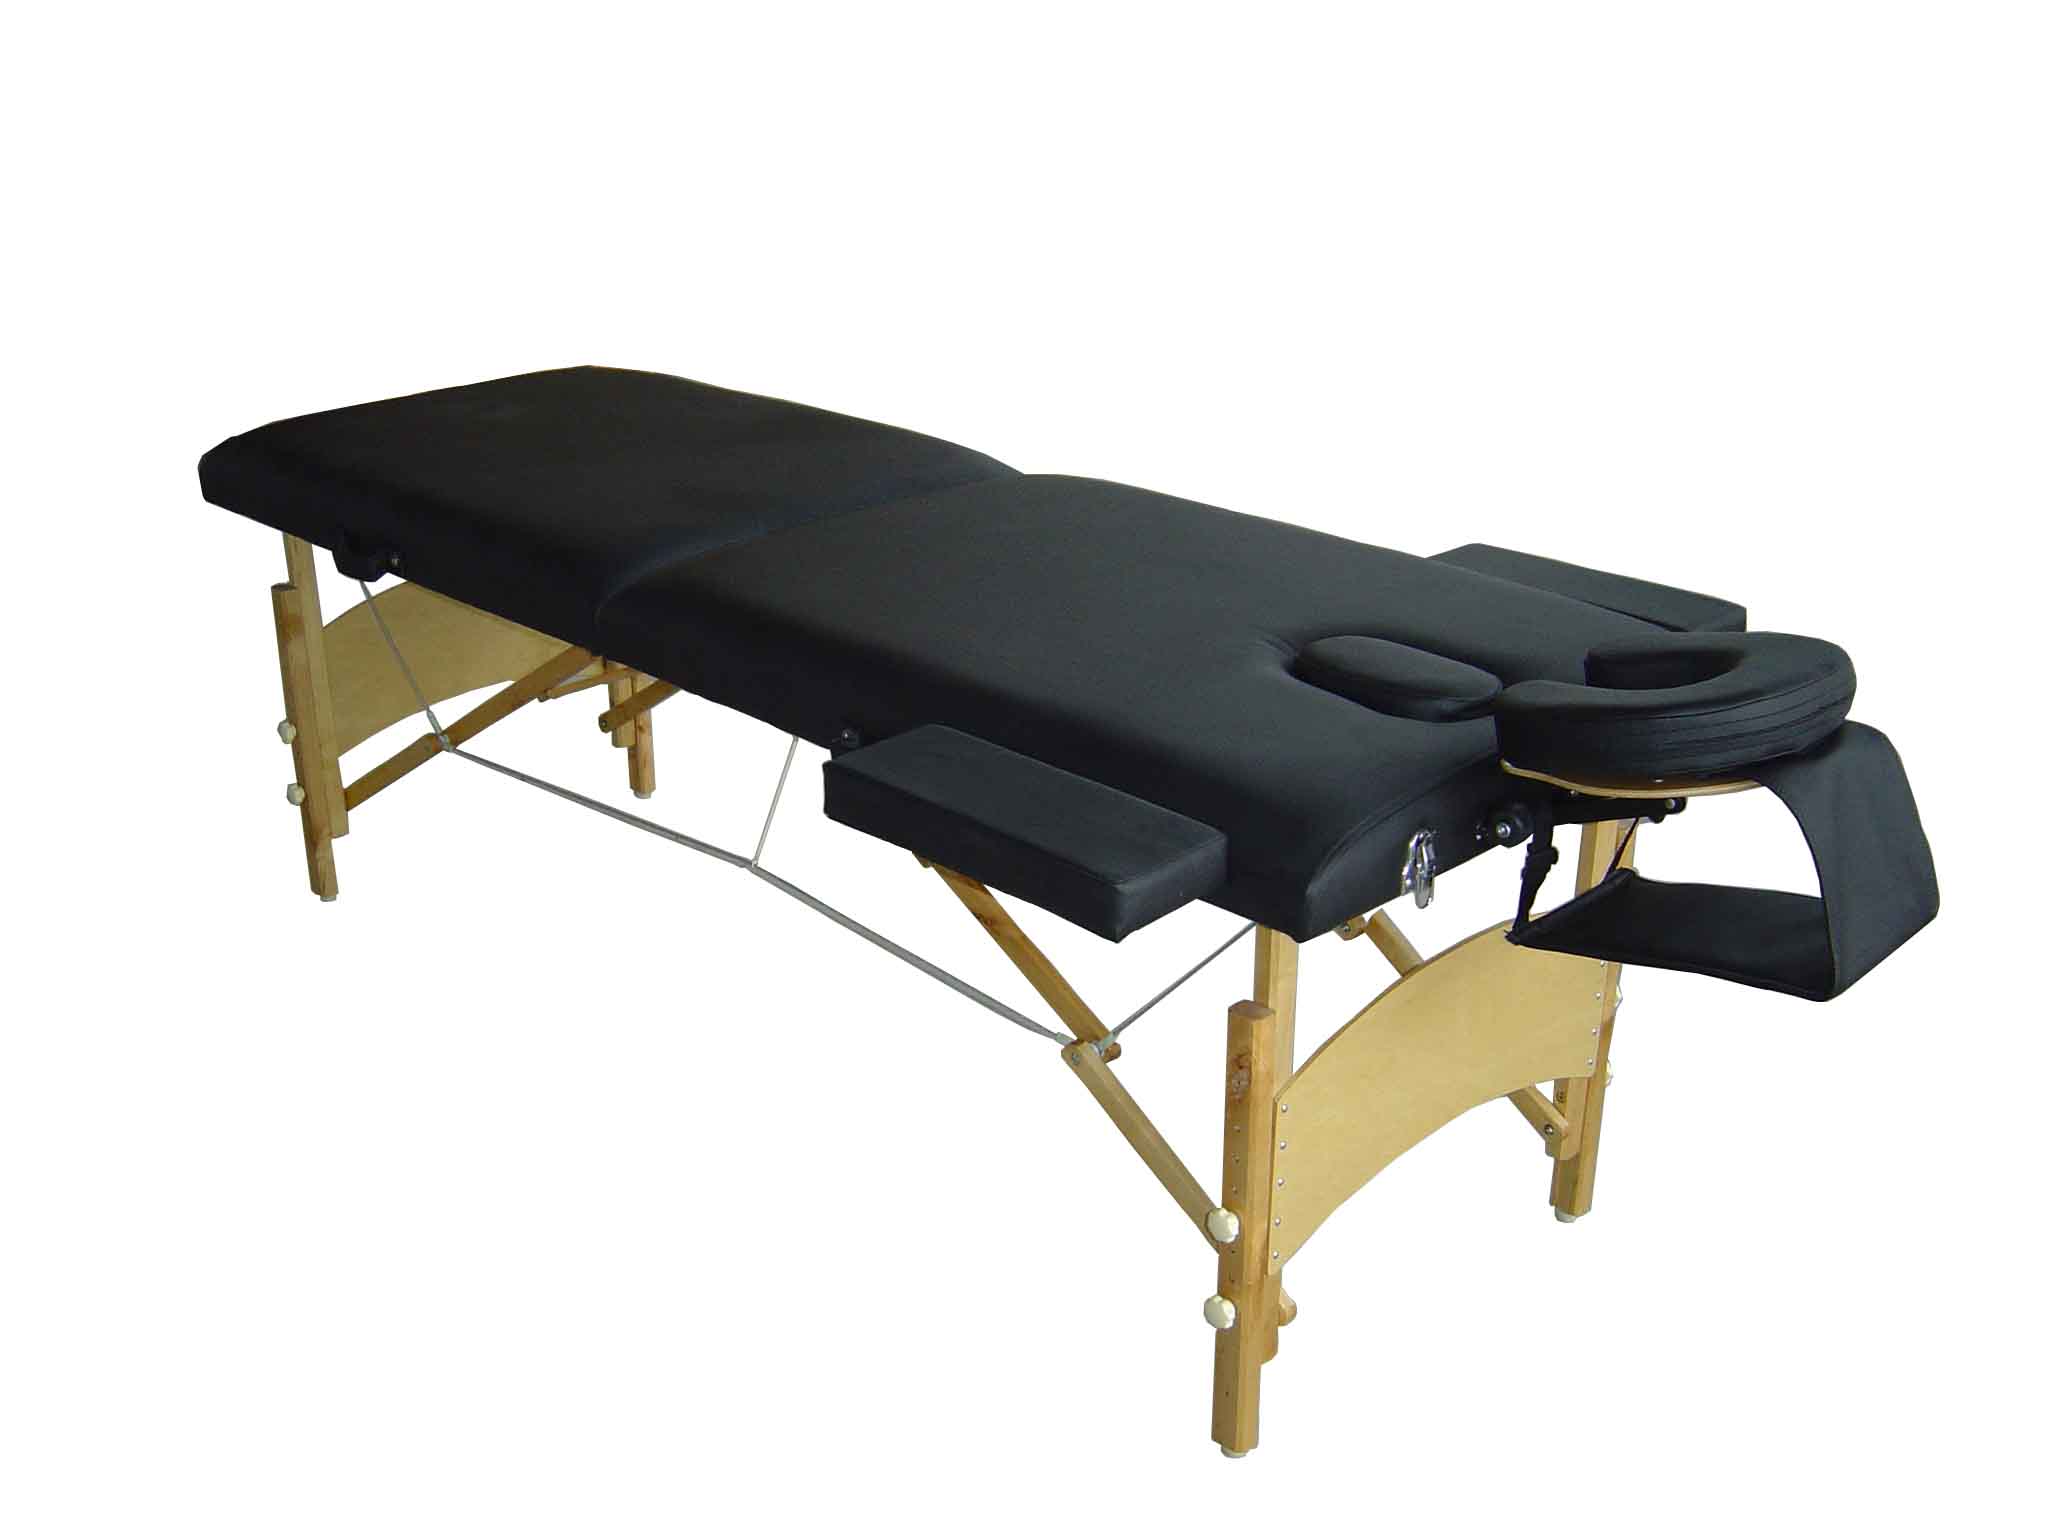  MT-007 Wooden Massage Table ( MT-007 Wooden Massage Table)